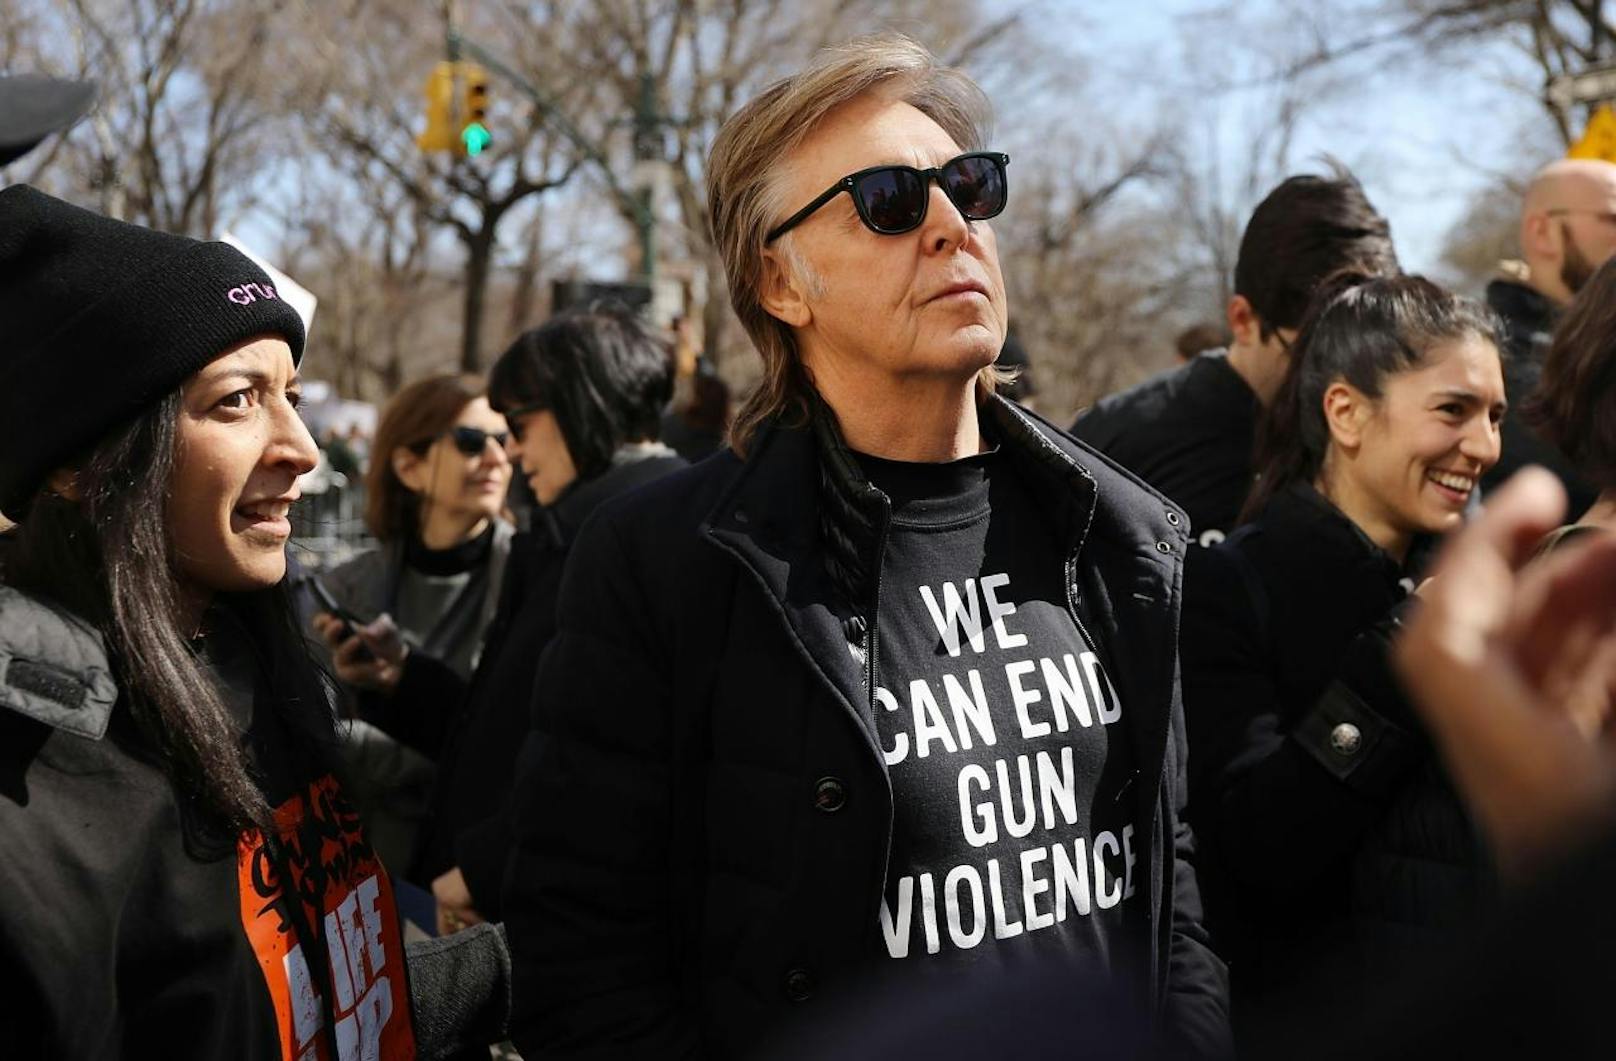 Für den Mega-Protest erwartete die Polizei mindestens eine halbe Million Teilnehmer. Darunter befinden sich auch Stars wie Ex-Beatle Paul McCartney.